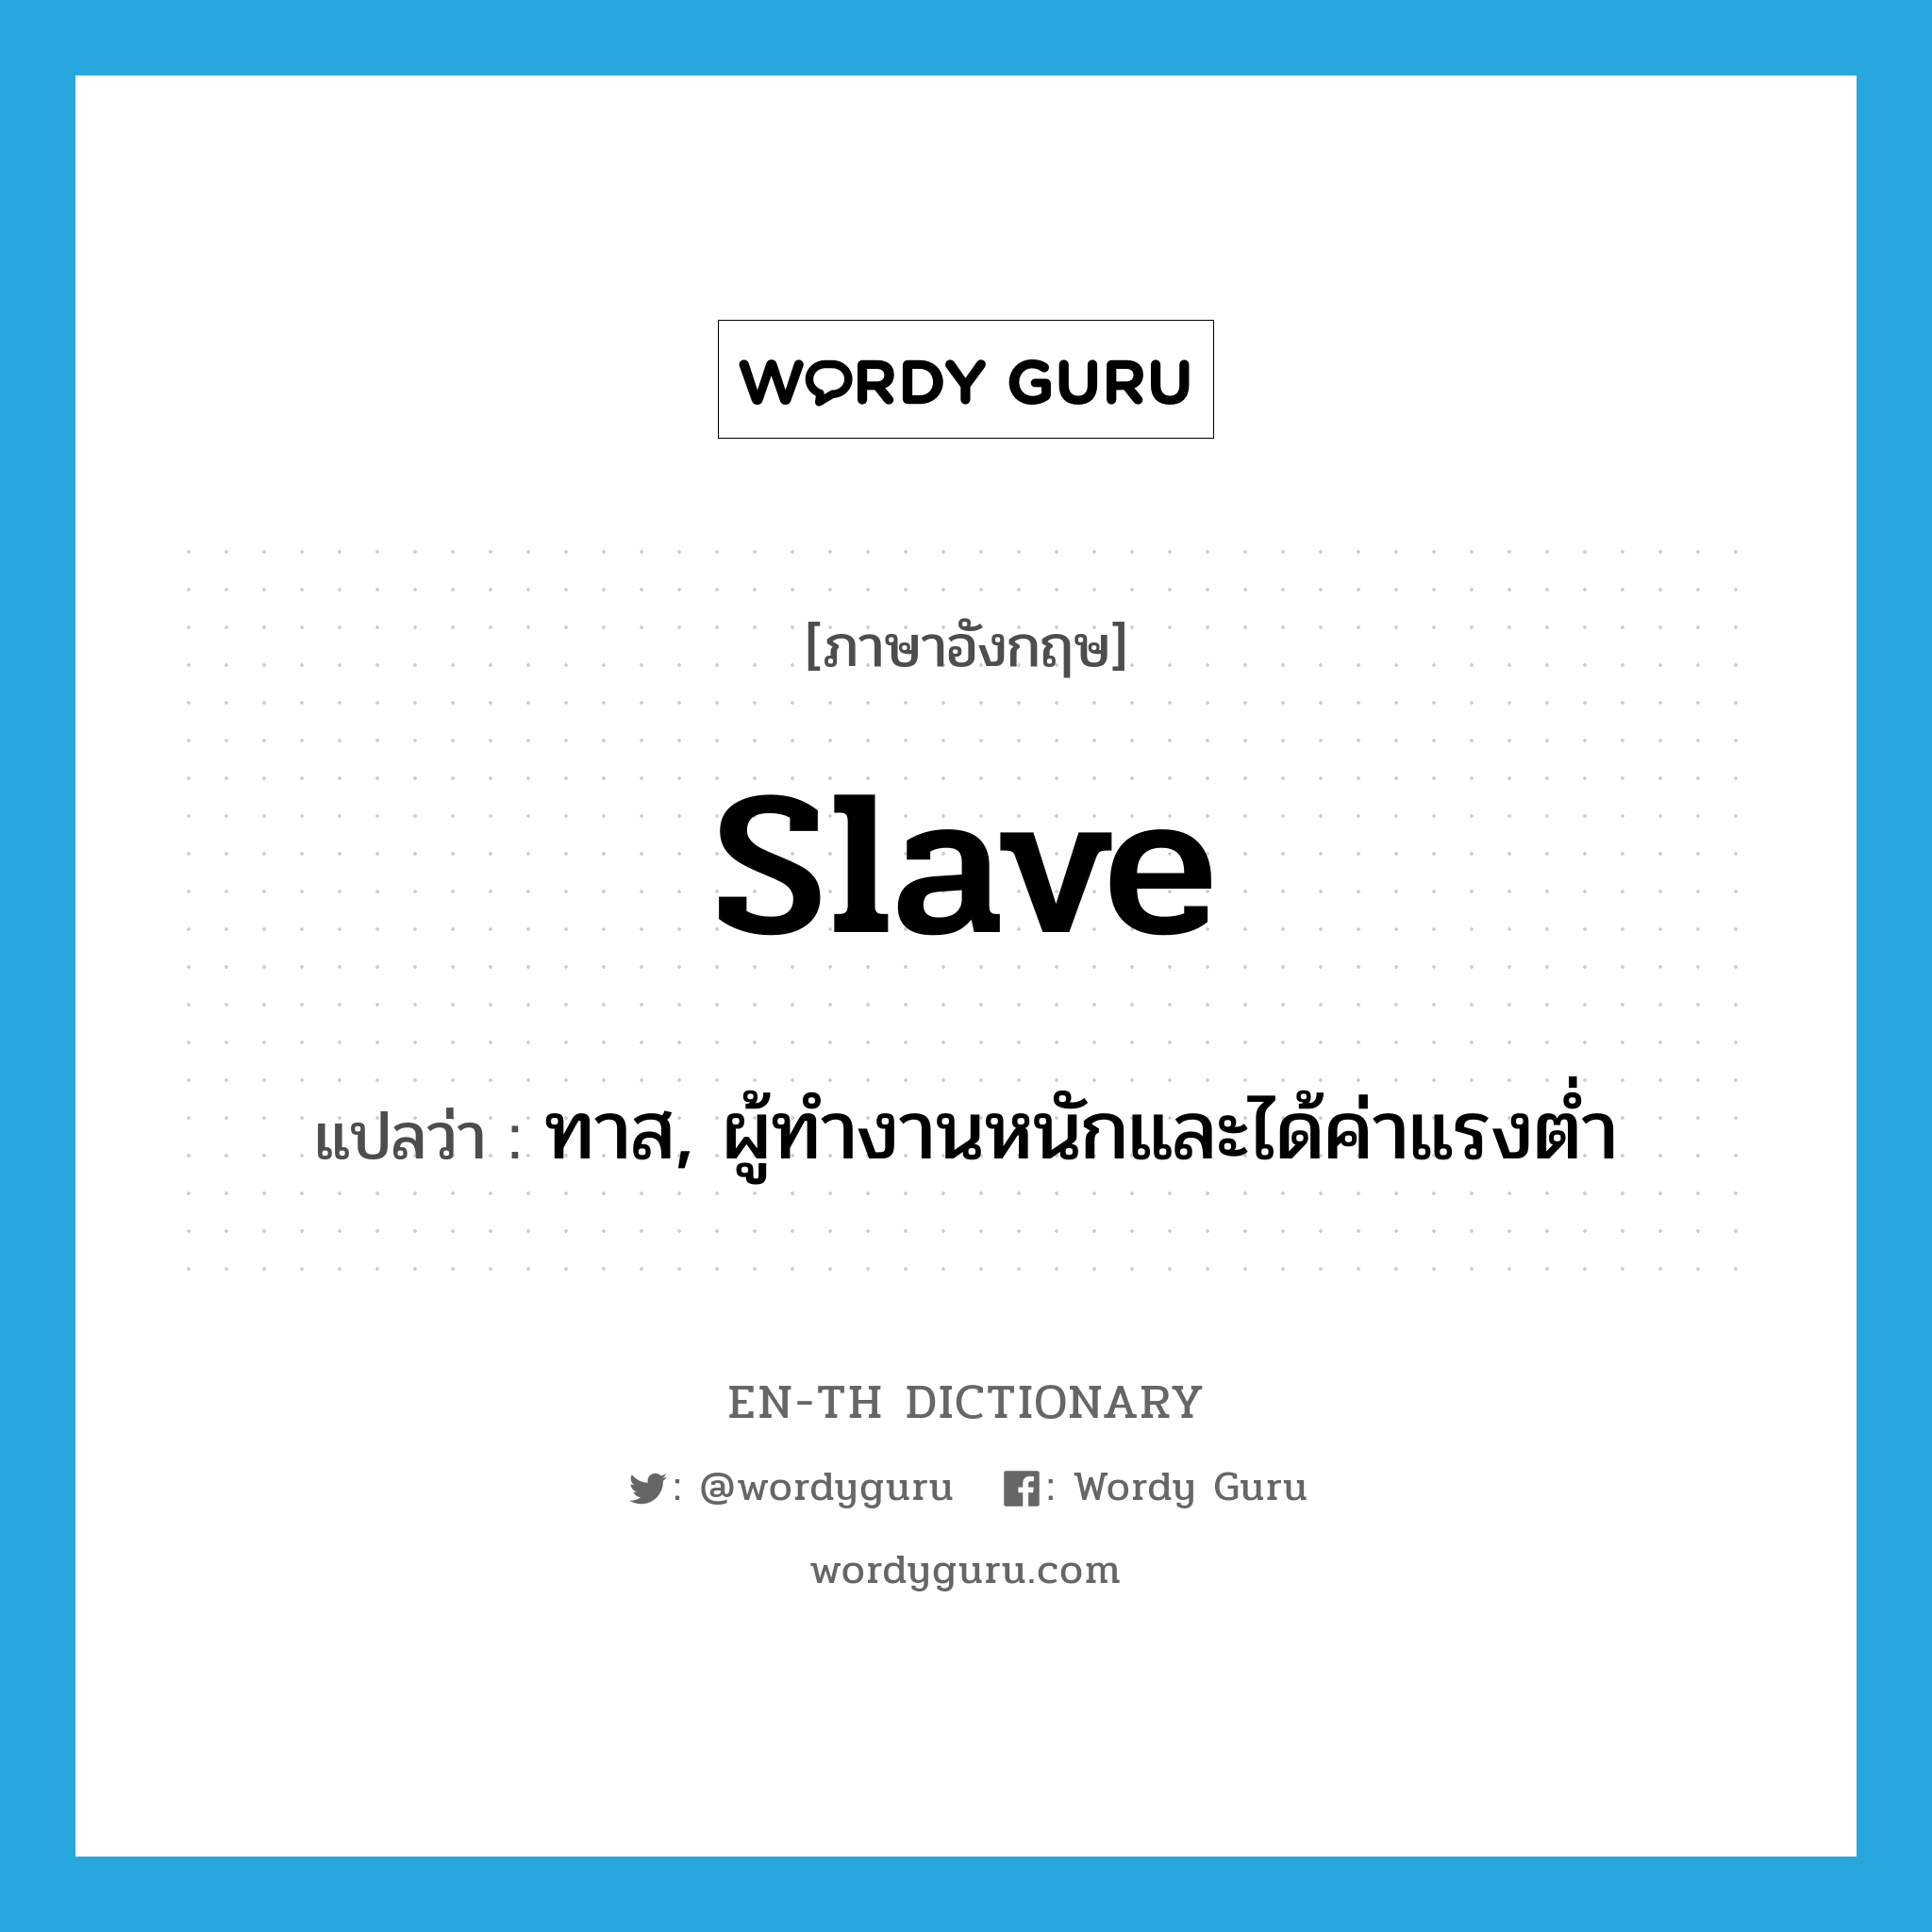 ทาส, ผู้ทำงานหนักและได้ค่าแรงต่ำ ภาษาอังกฤษ?, คำศัพท์ภาษาอังกฤษ ทาส, ผู้ทำงานหนักและได้ค่าแรงต่ำ แปลว่า slave ประเภท N หมวด N